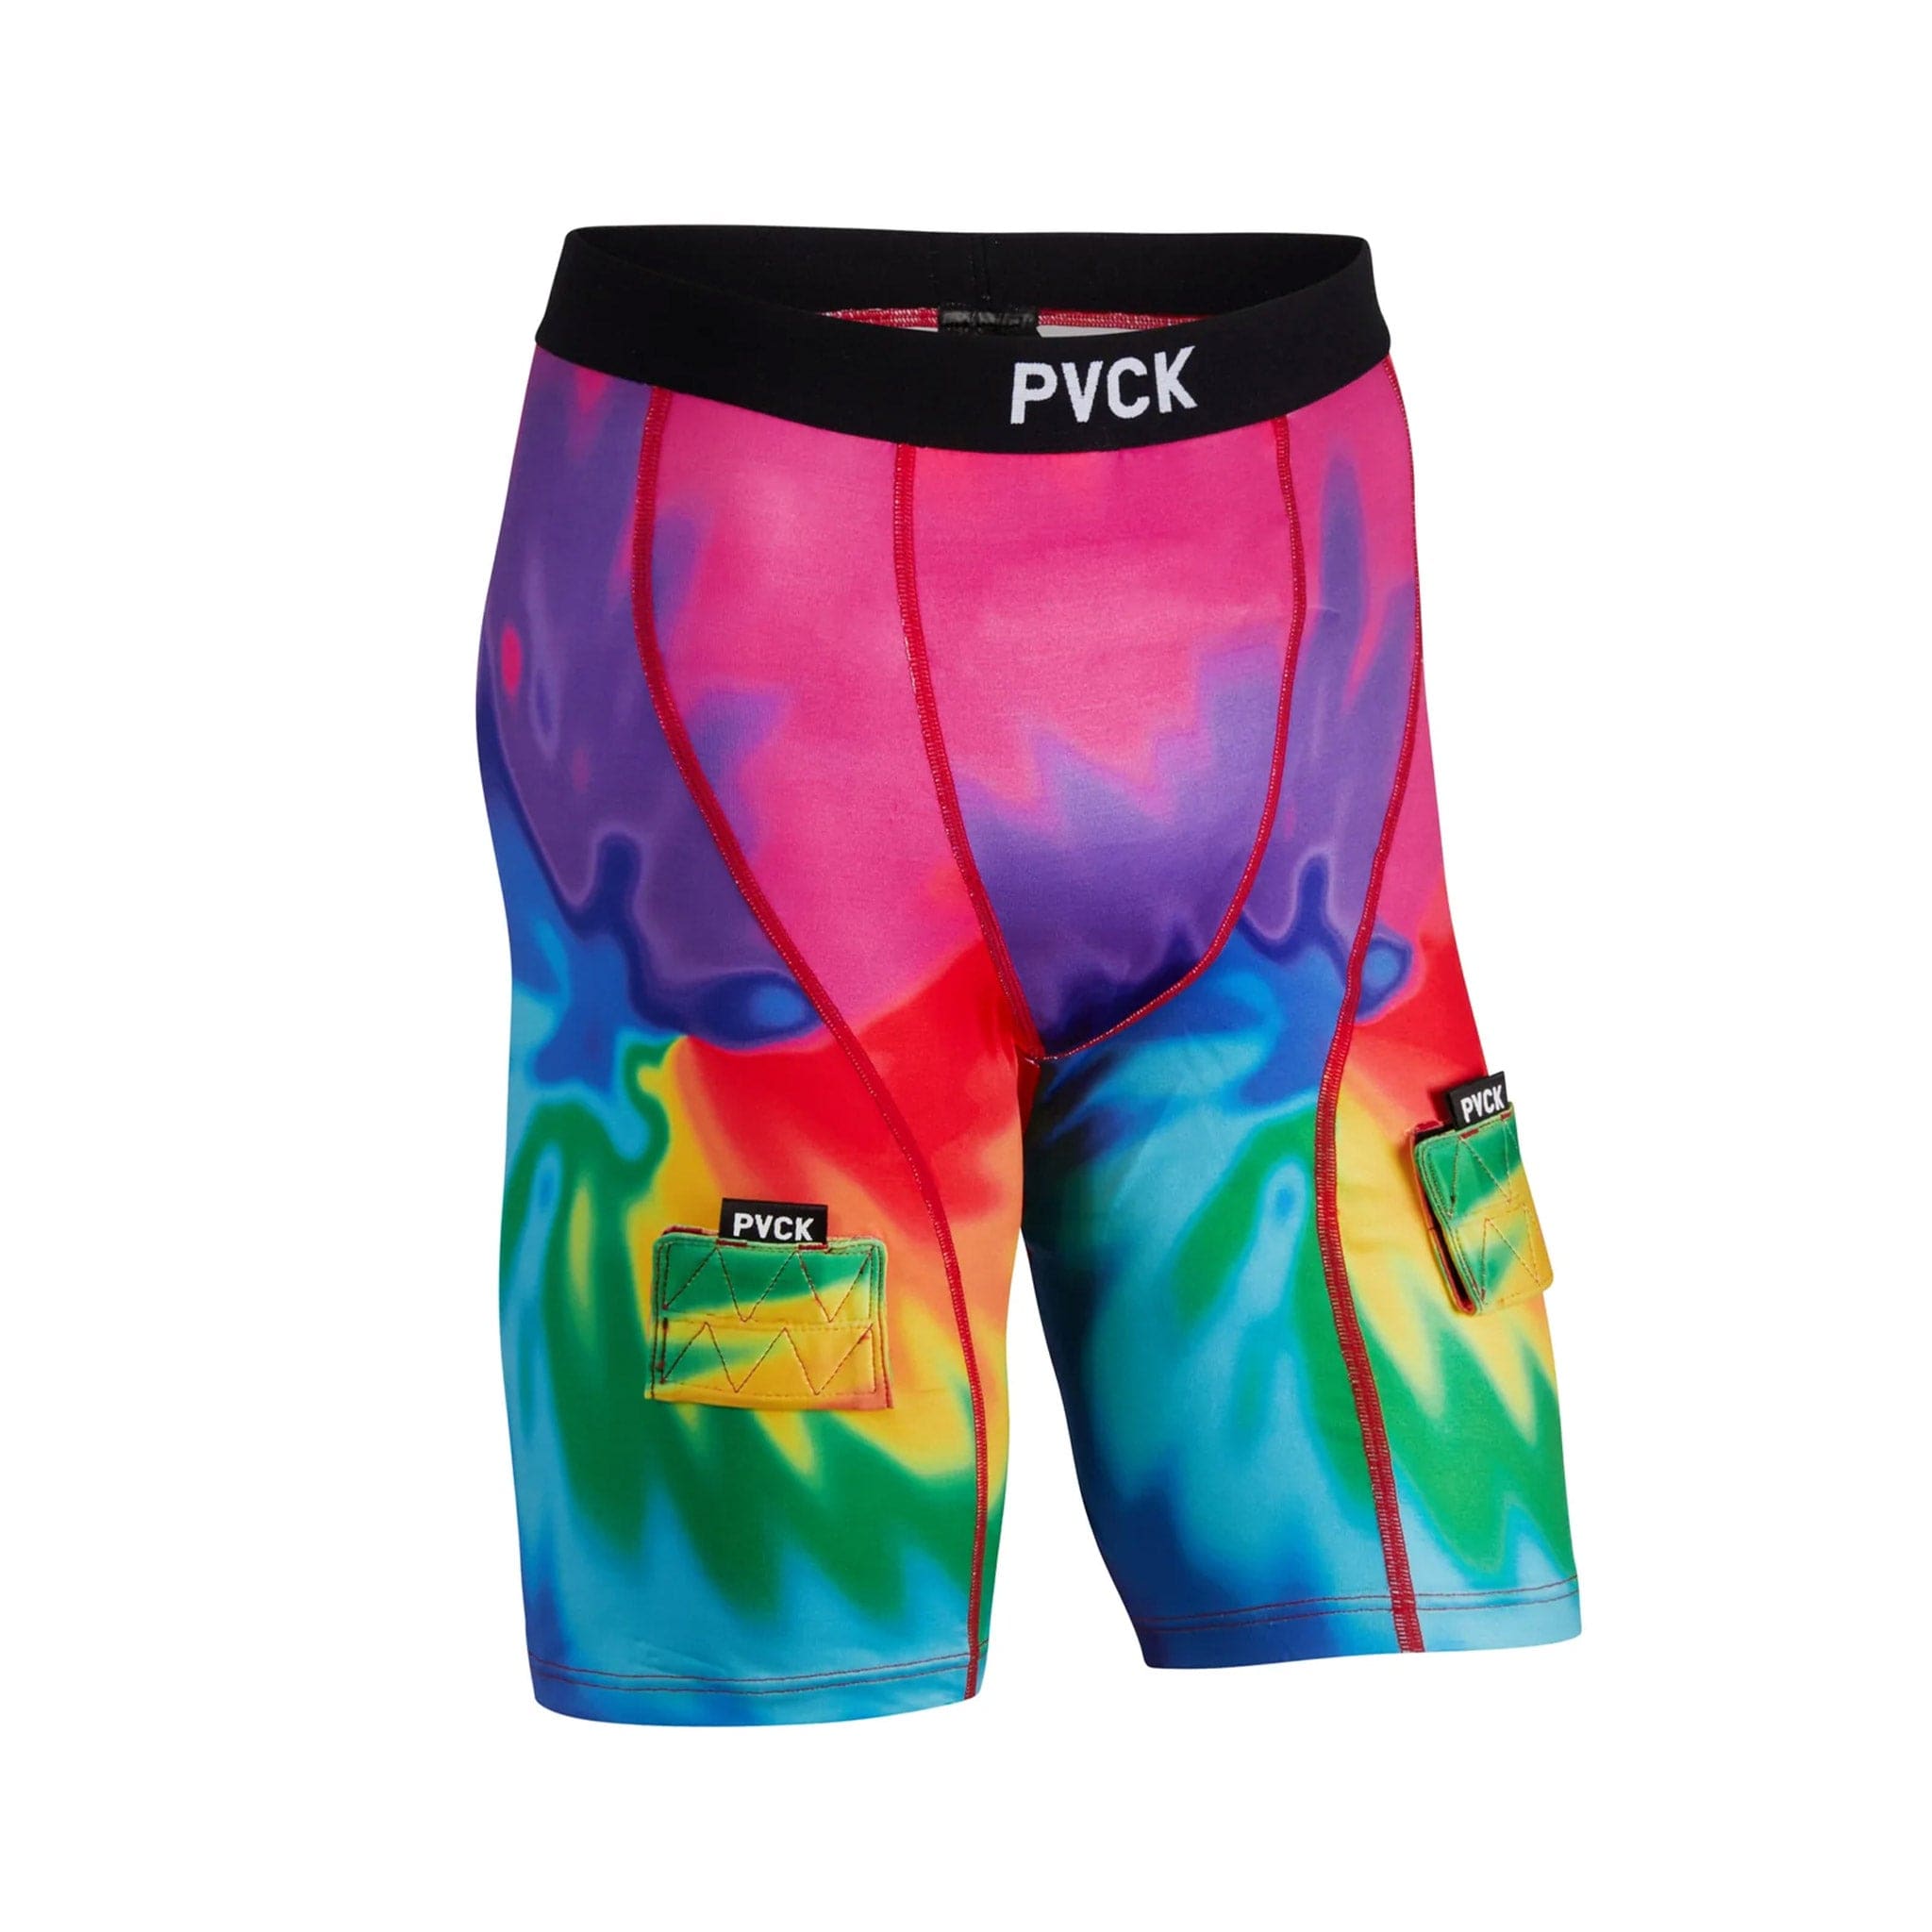 PVCK Womens Compression Jill Shorts - Tie Dye